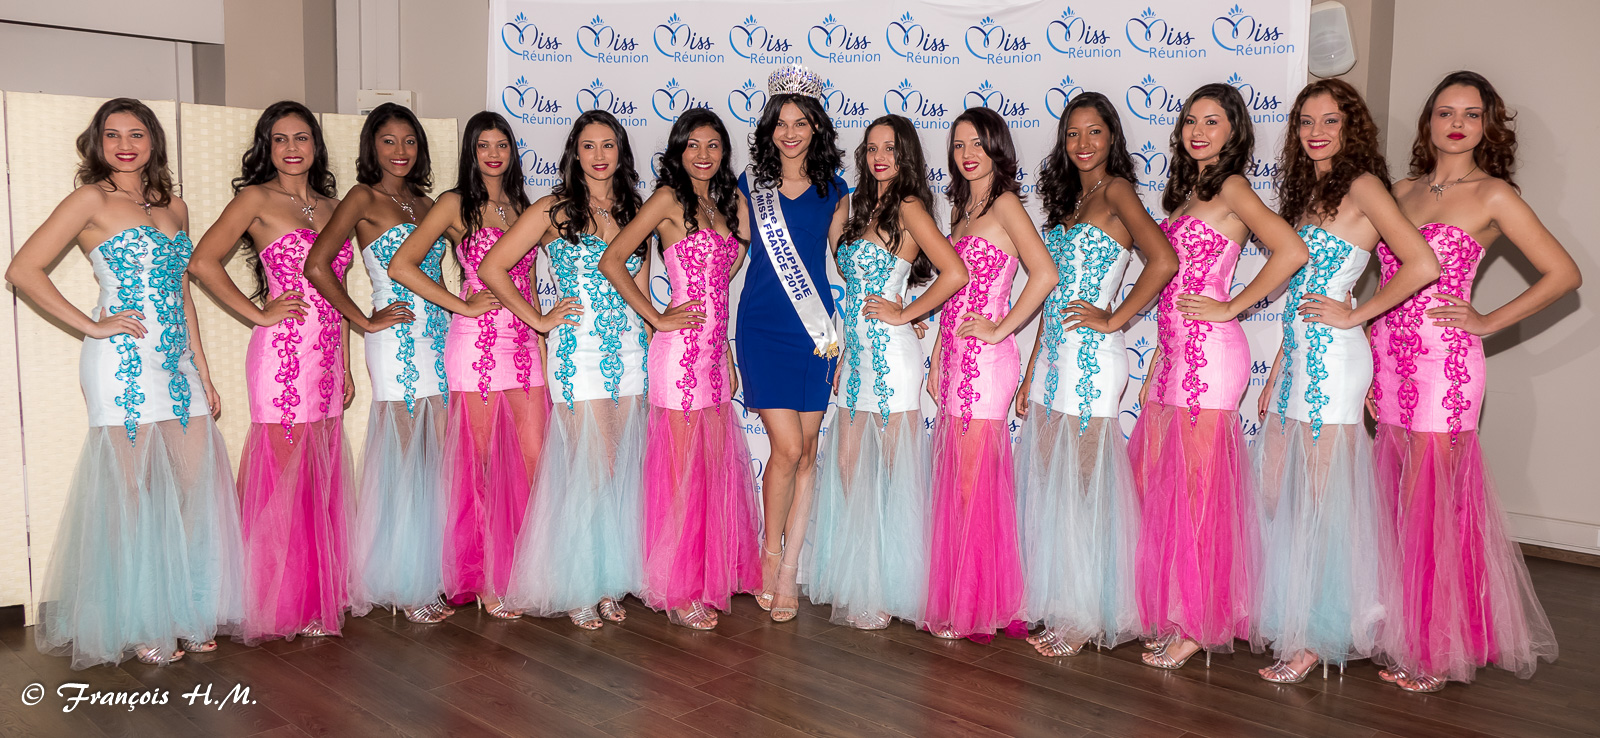 Les 12 candidates 2016 entourent Miss Réunion 2016